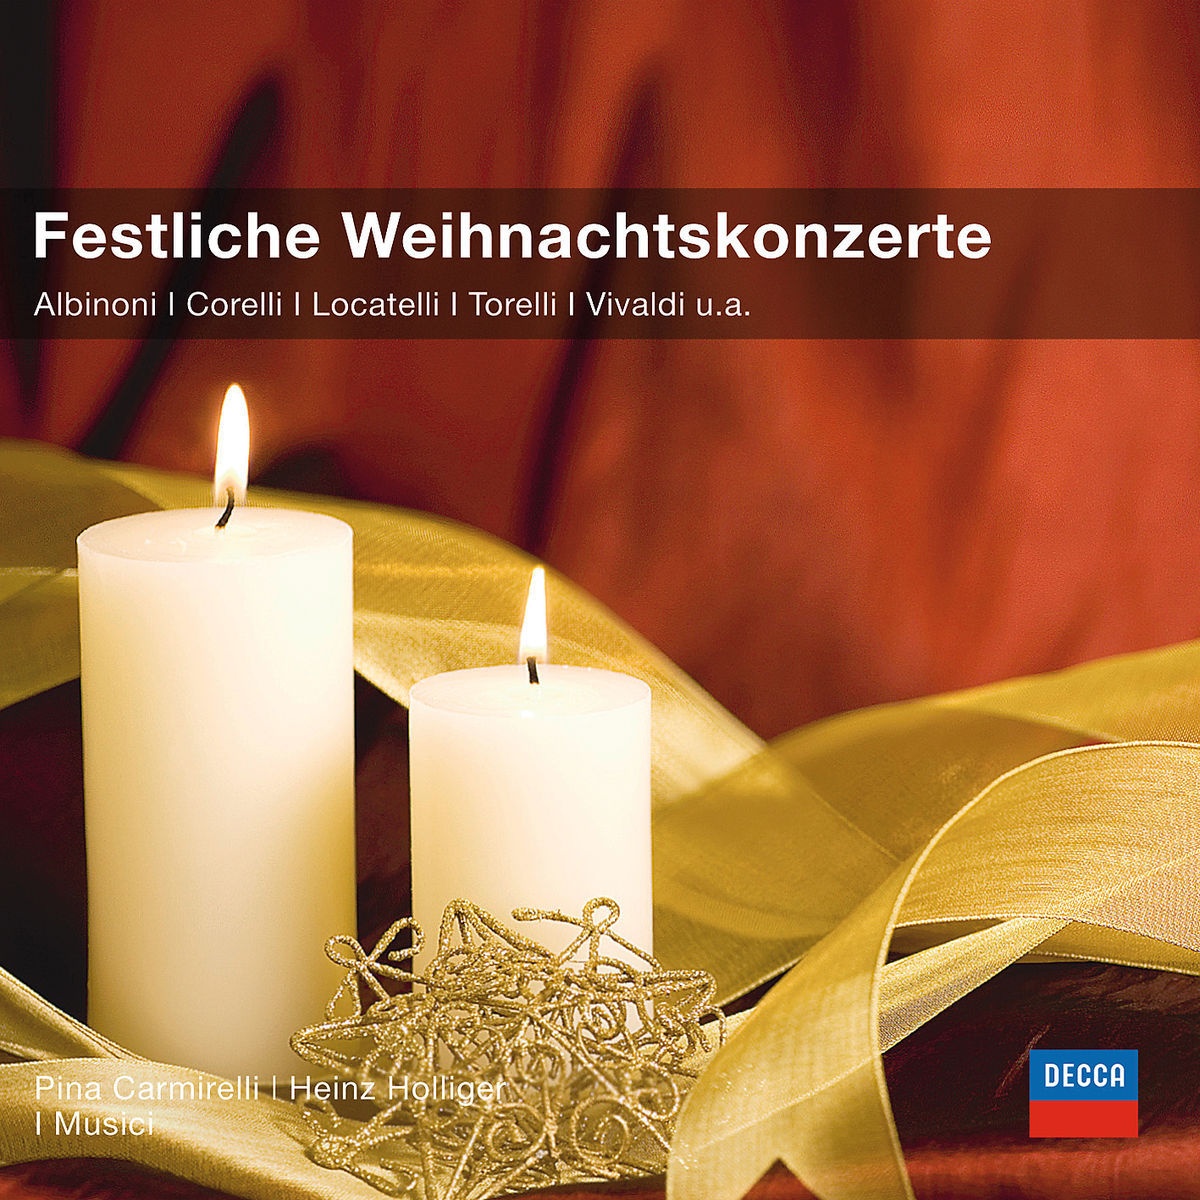 Festliche Weihnachtskonzerte - Pina Carmirelli  Heinz Holliger  I Musici. (CD)